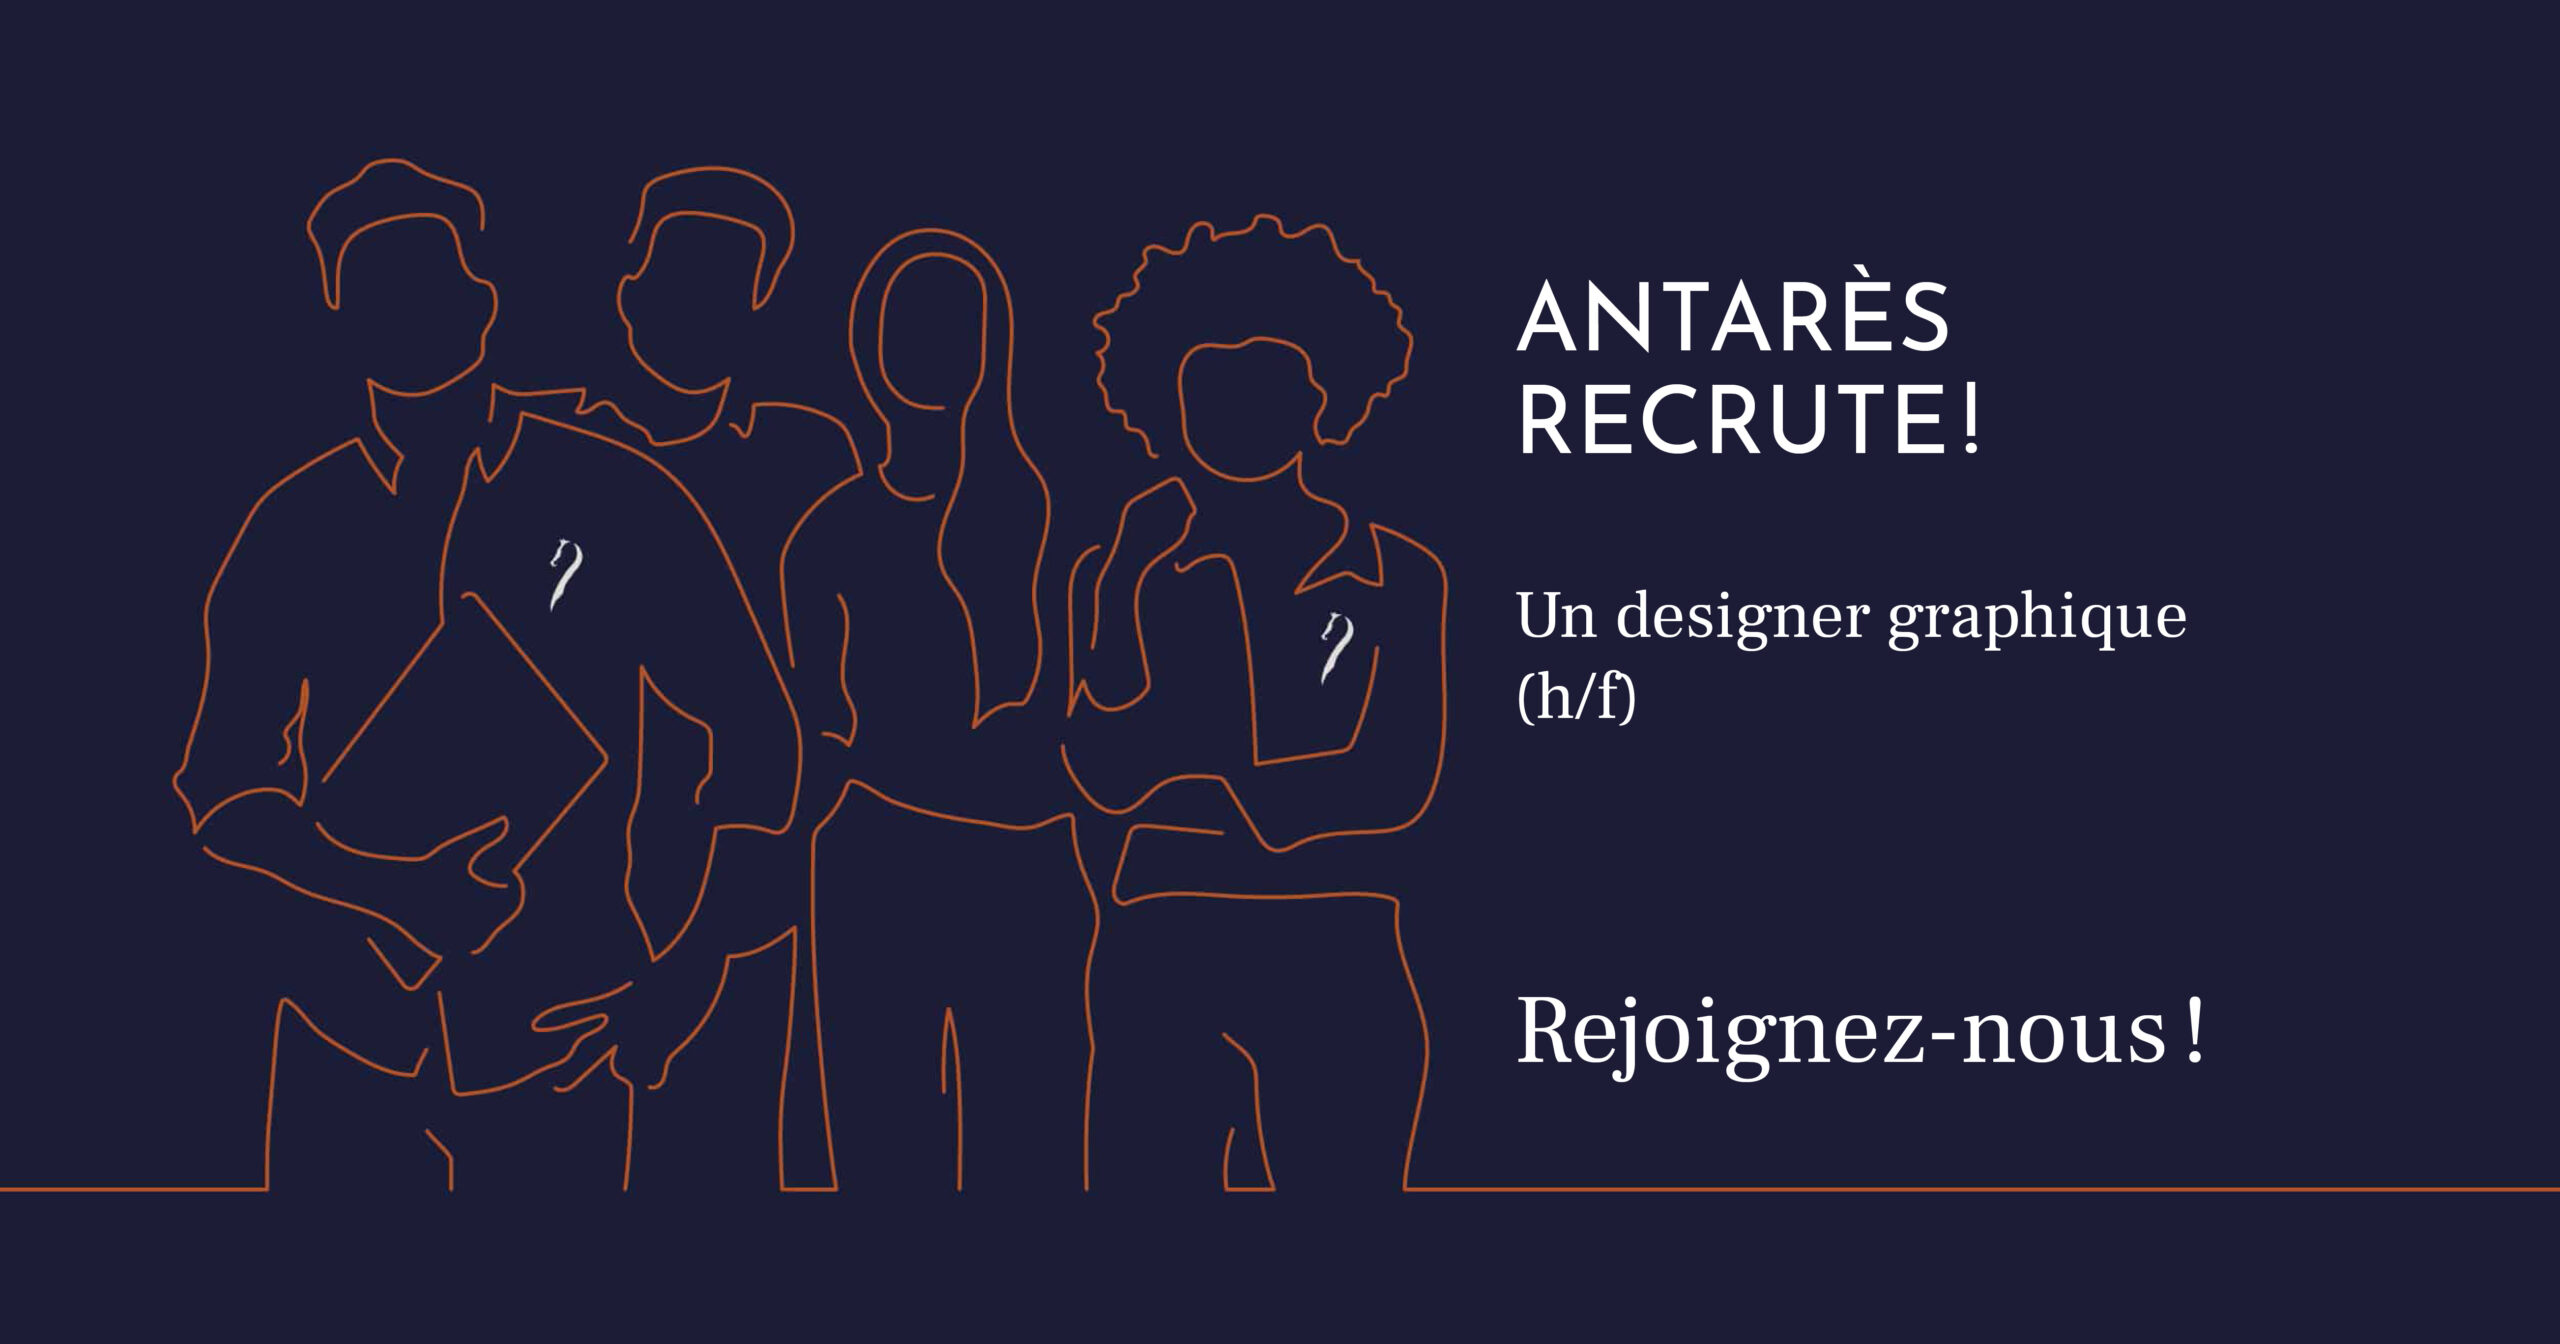 Antarès ouvre son recrutement et recherche un designer graphique